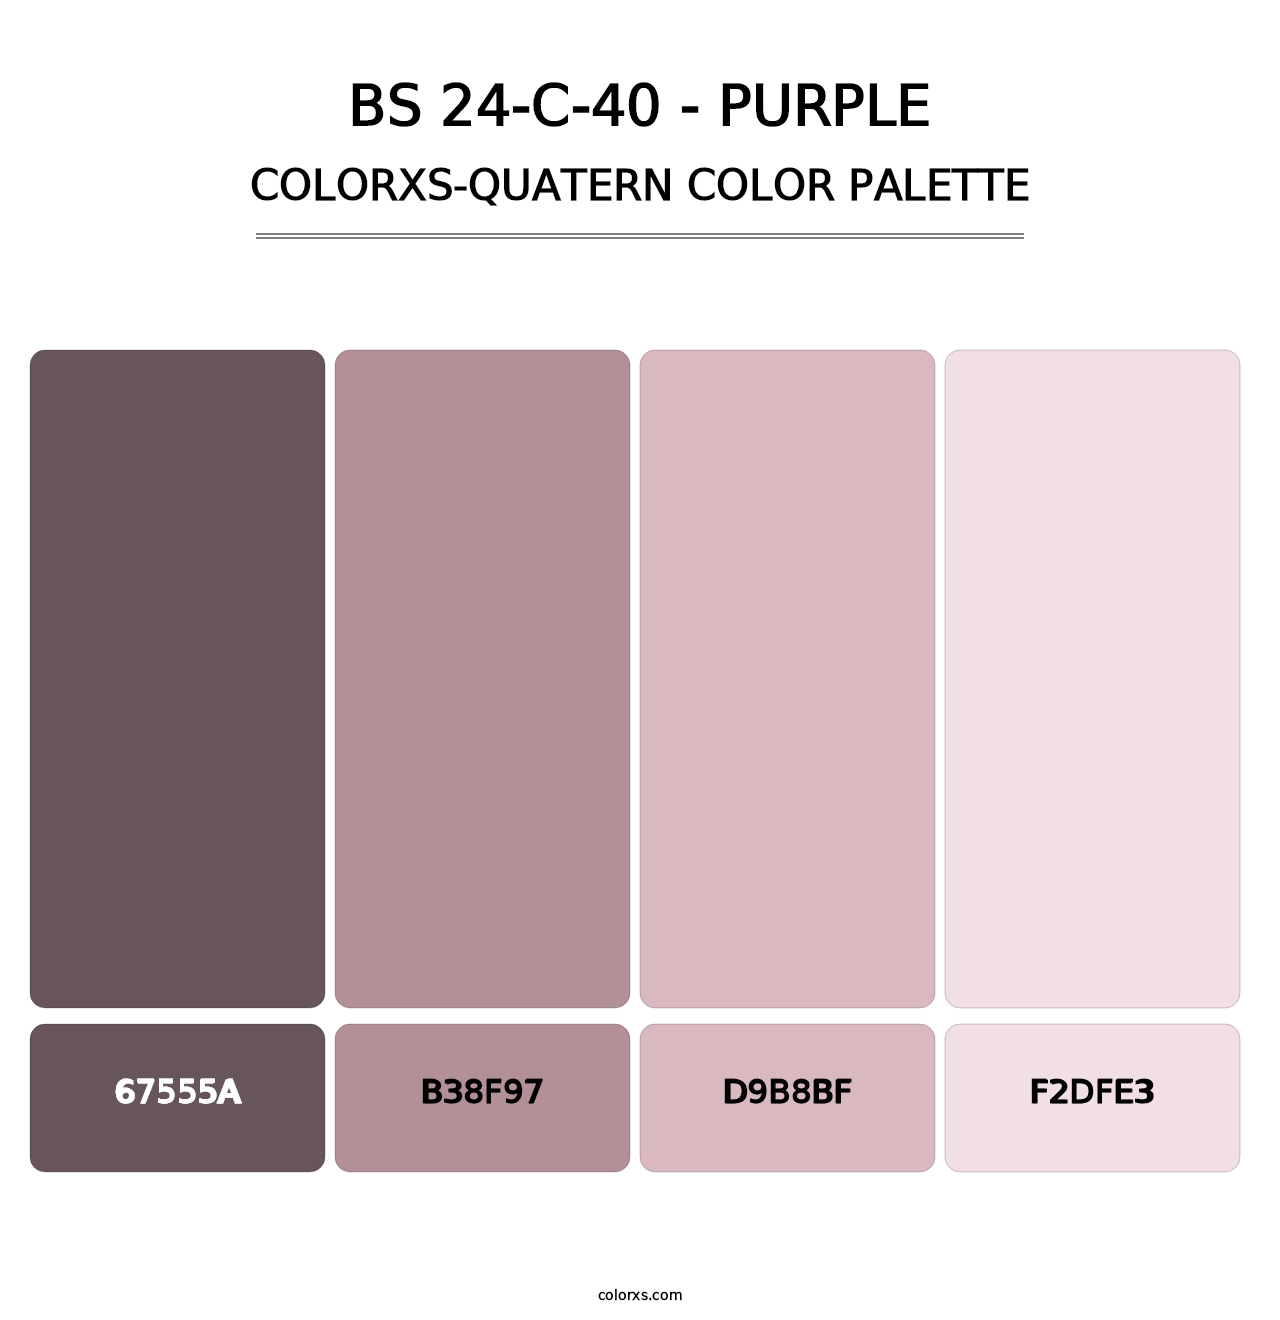 BS 24-C-40 - Purple - Colorxs Quatern Palette